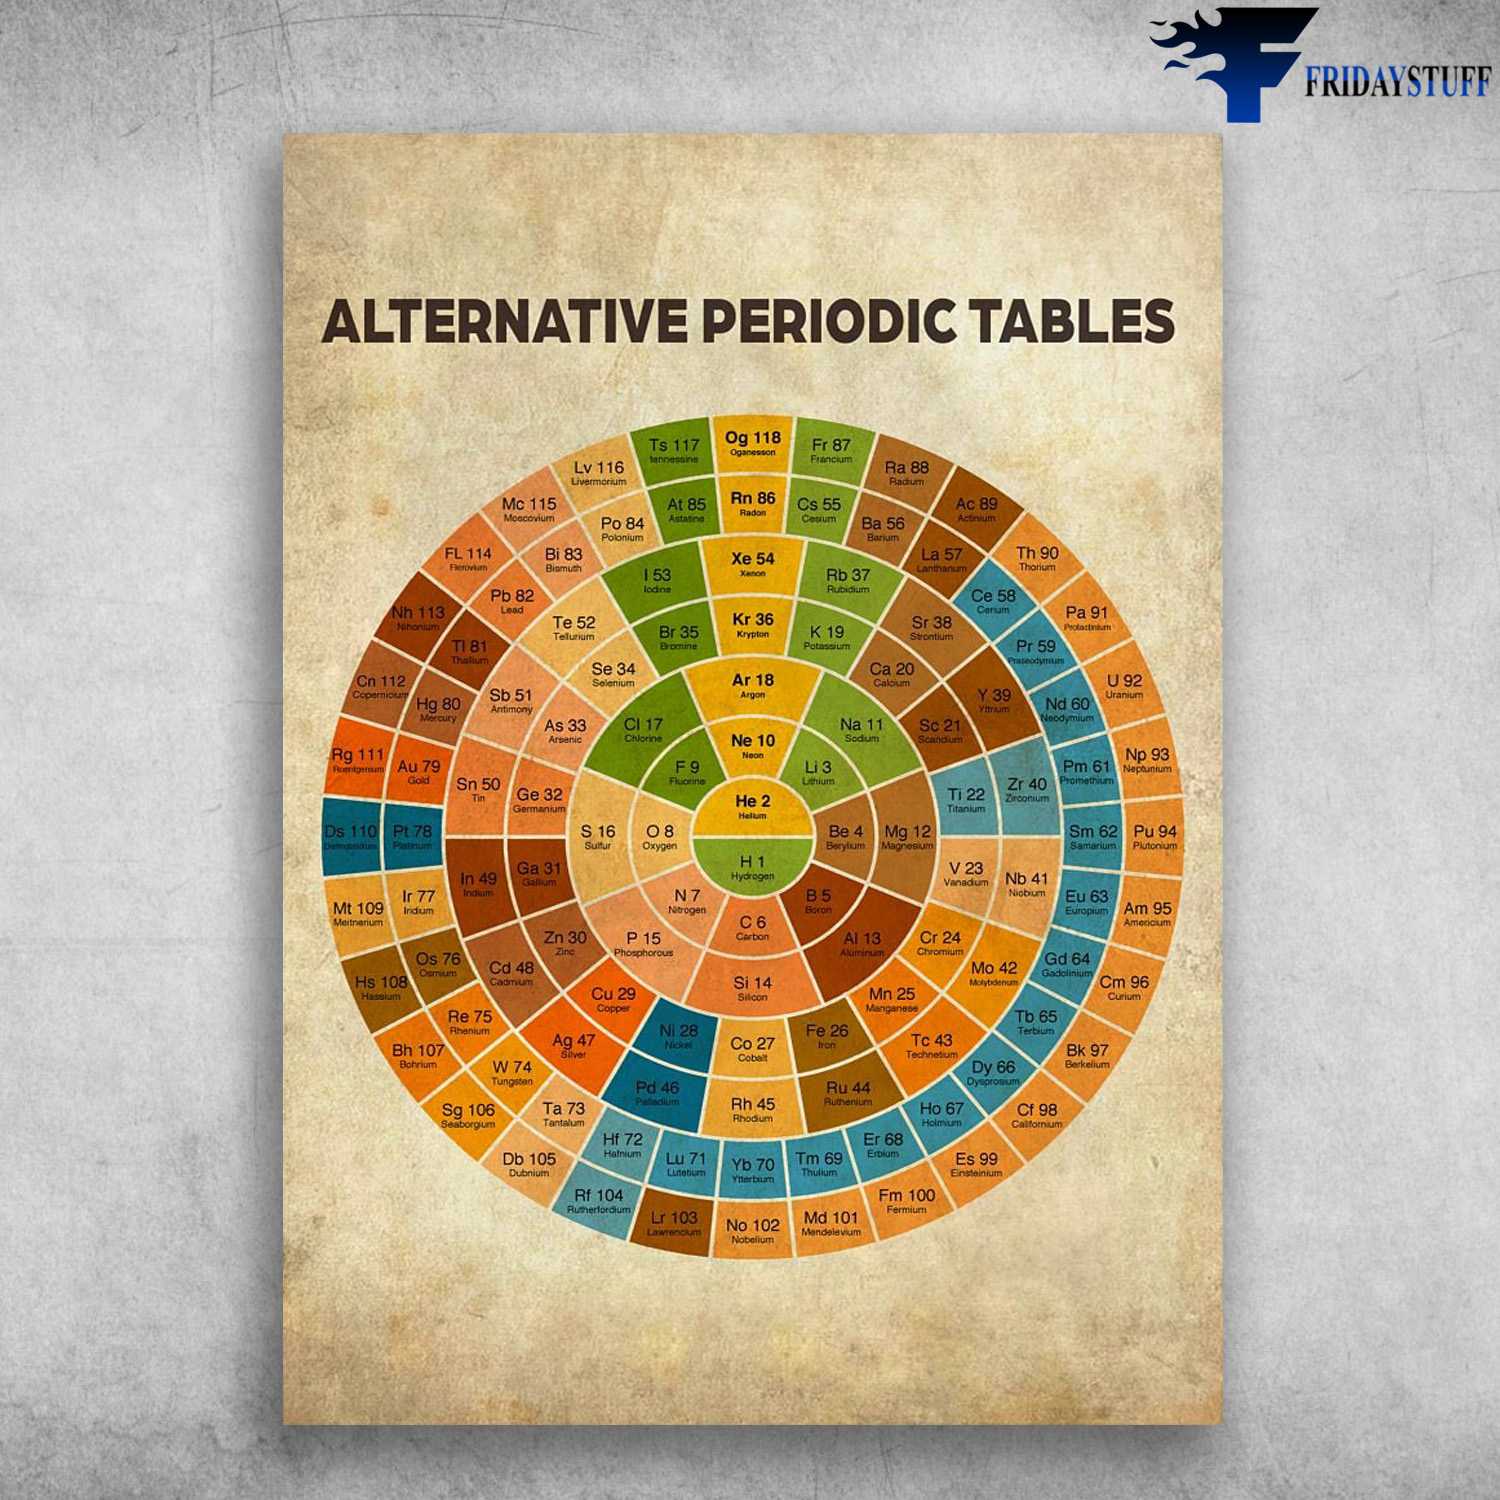 Alternative Periodic Tables, Alternative Periodic Knowledge